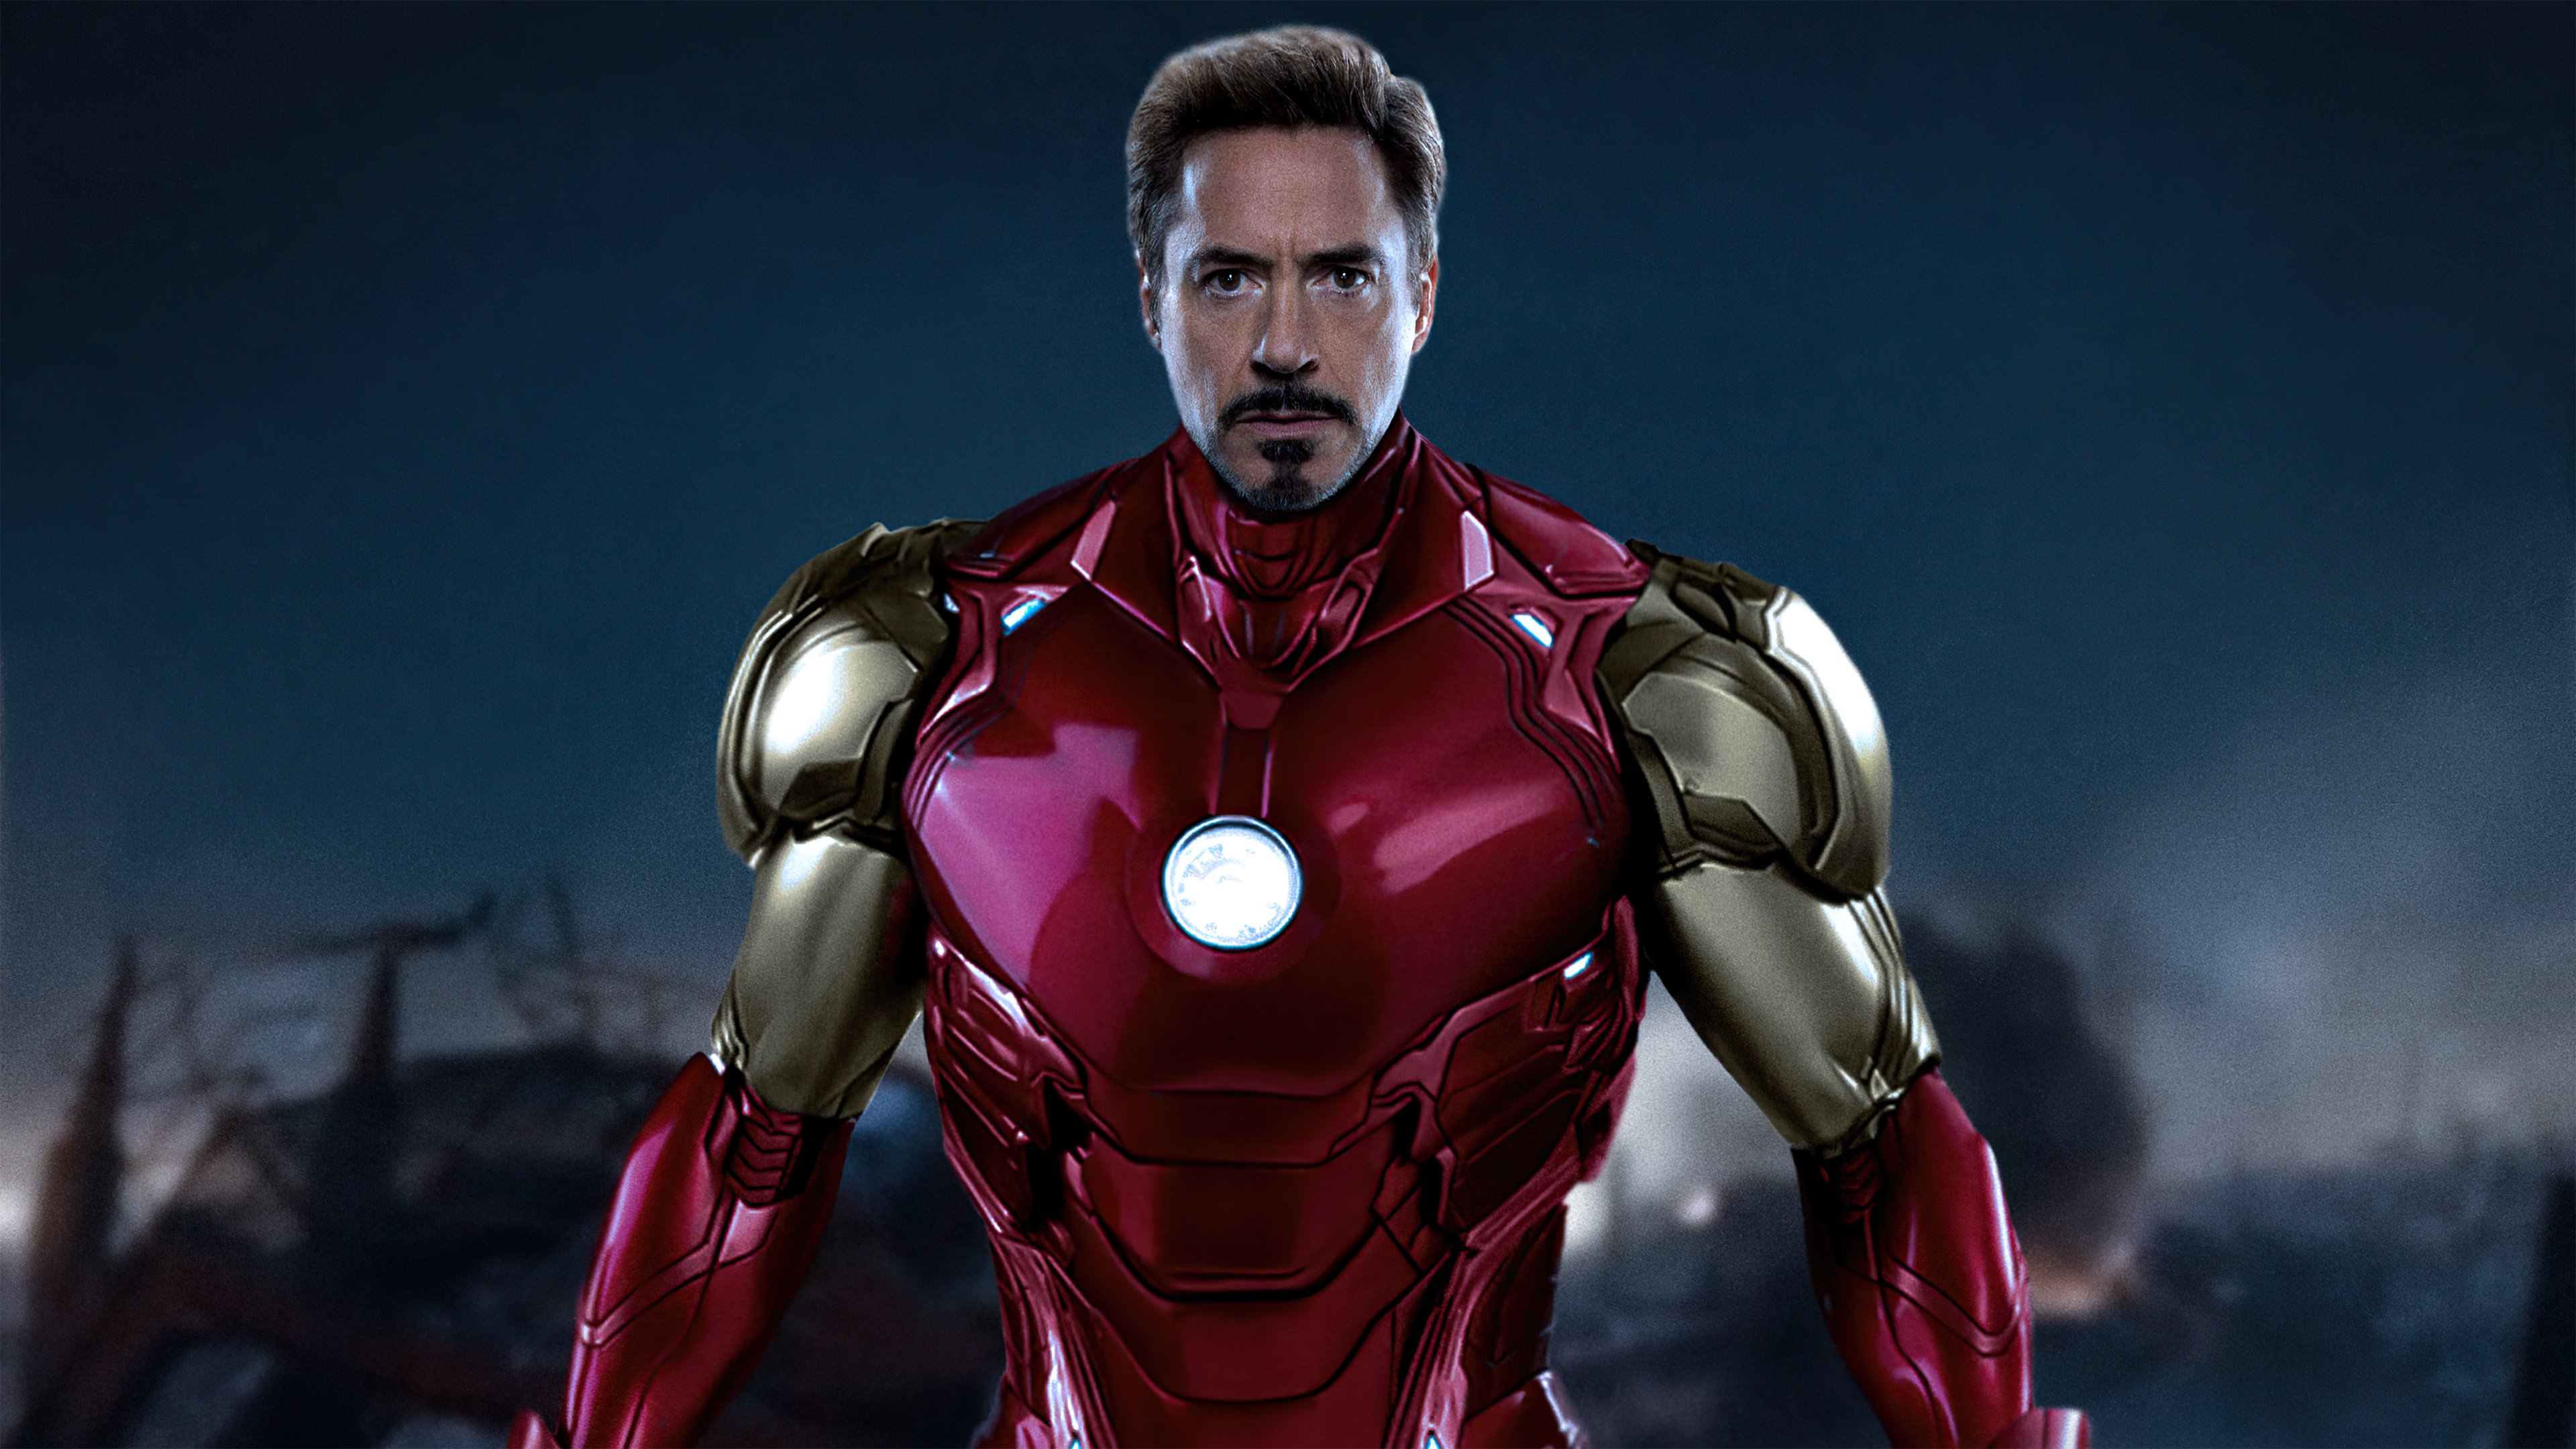 Wallpaper Tony Stark as Iron Man